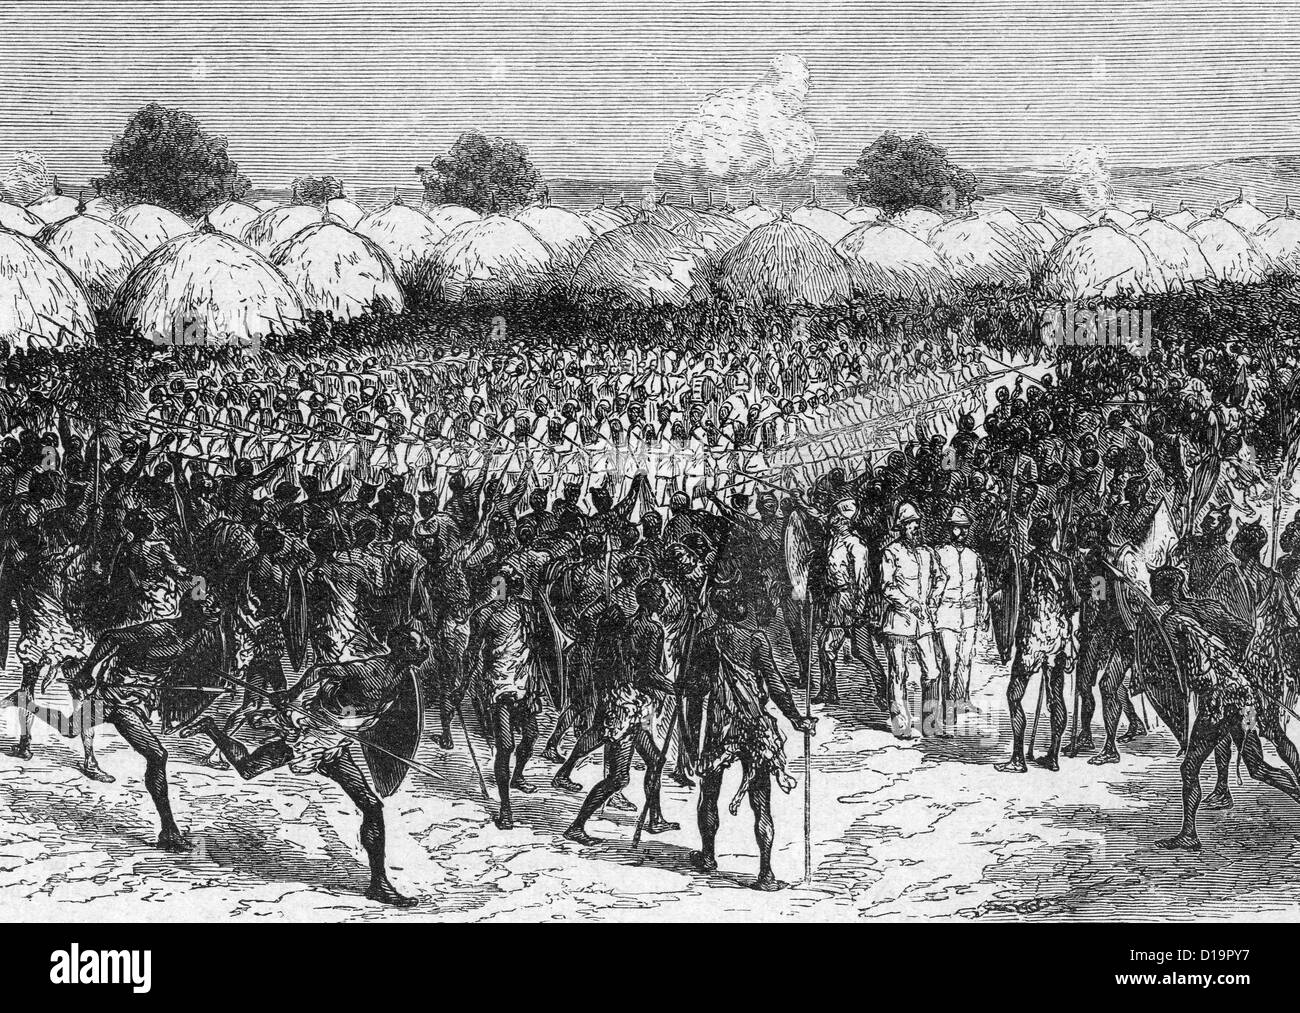 SIR SAMUEL BAKER (1821-1893) rencontre un accueil hostile à Masindi, à la tête d'une force militaire pour réprimer la traite des esclaves en 1869 Banque D'Images